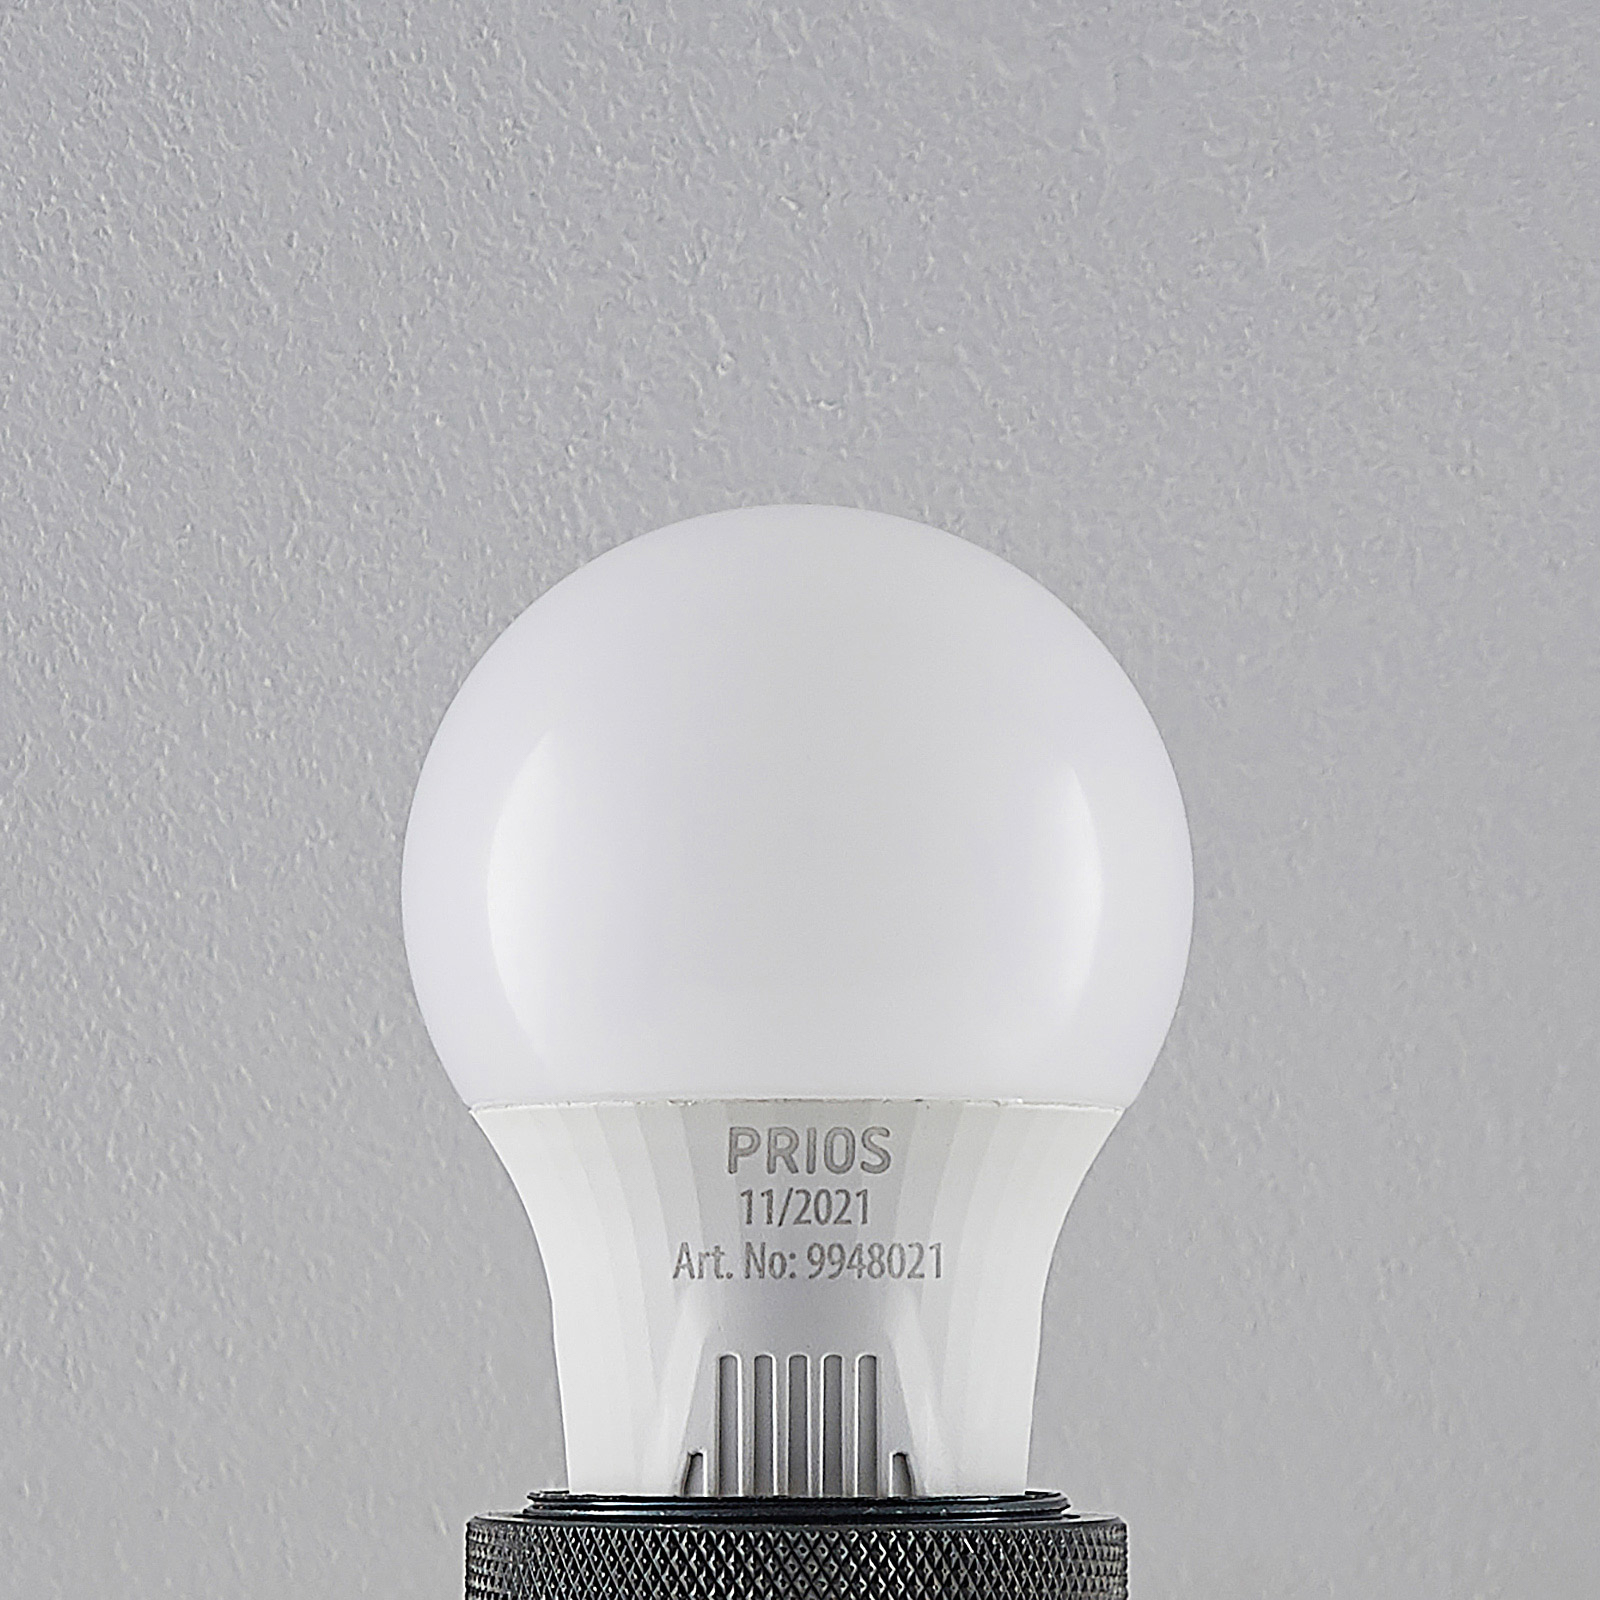 LED bulb E27 A60 7 W white 2,700 K